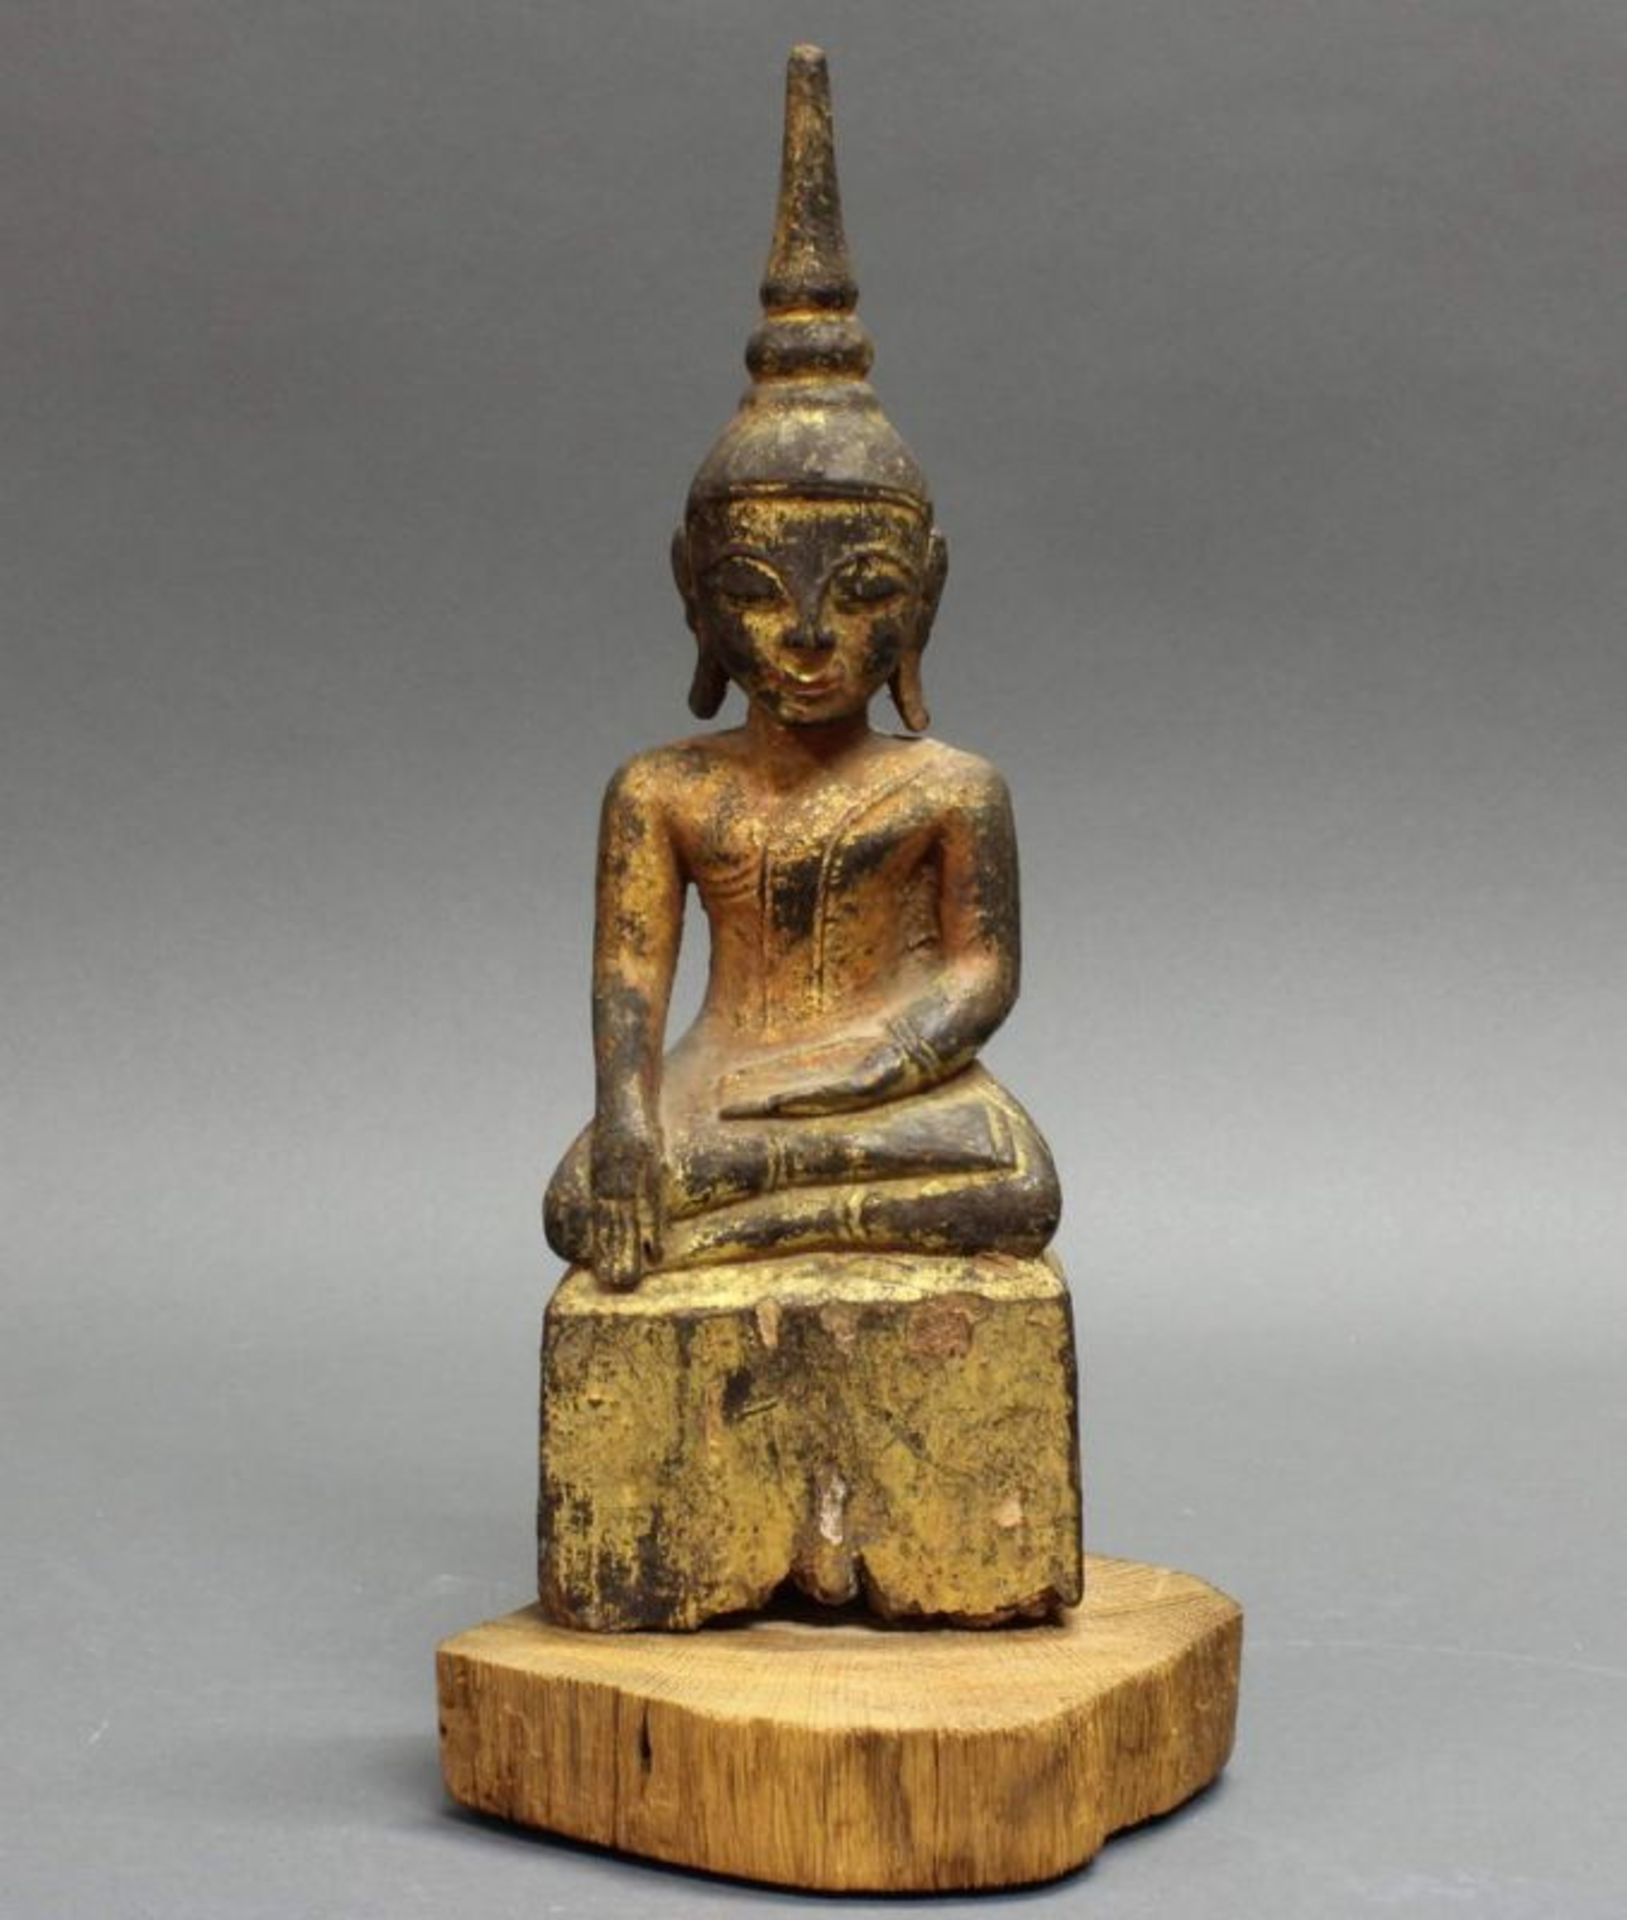 Skulptur, "Sitzender Buddha", Burma, 19./20. Jh., Holz, geschnitzt, vergoldet, auf Holzsockel, 28.